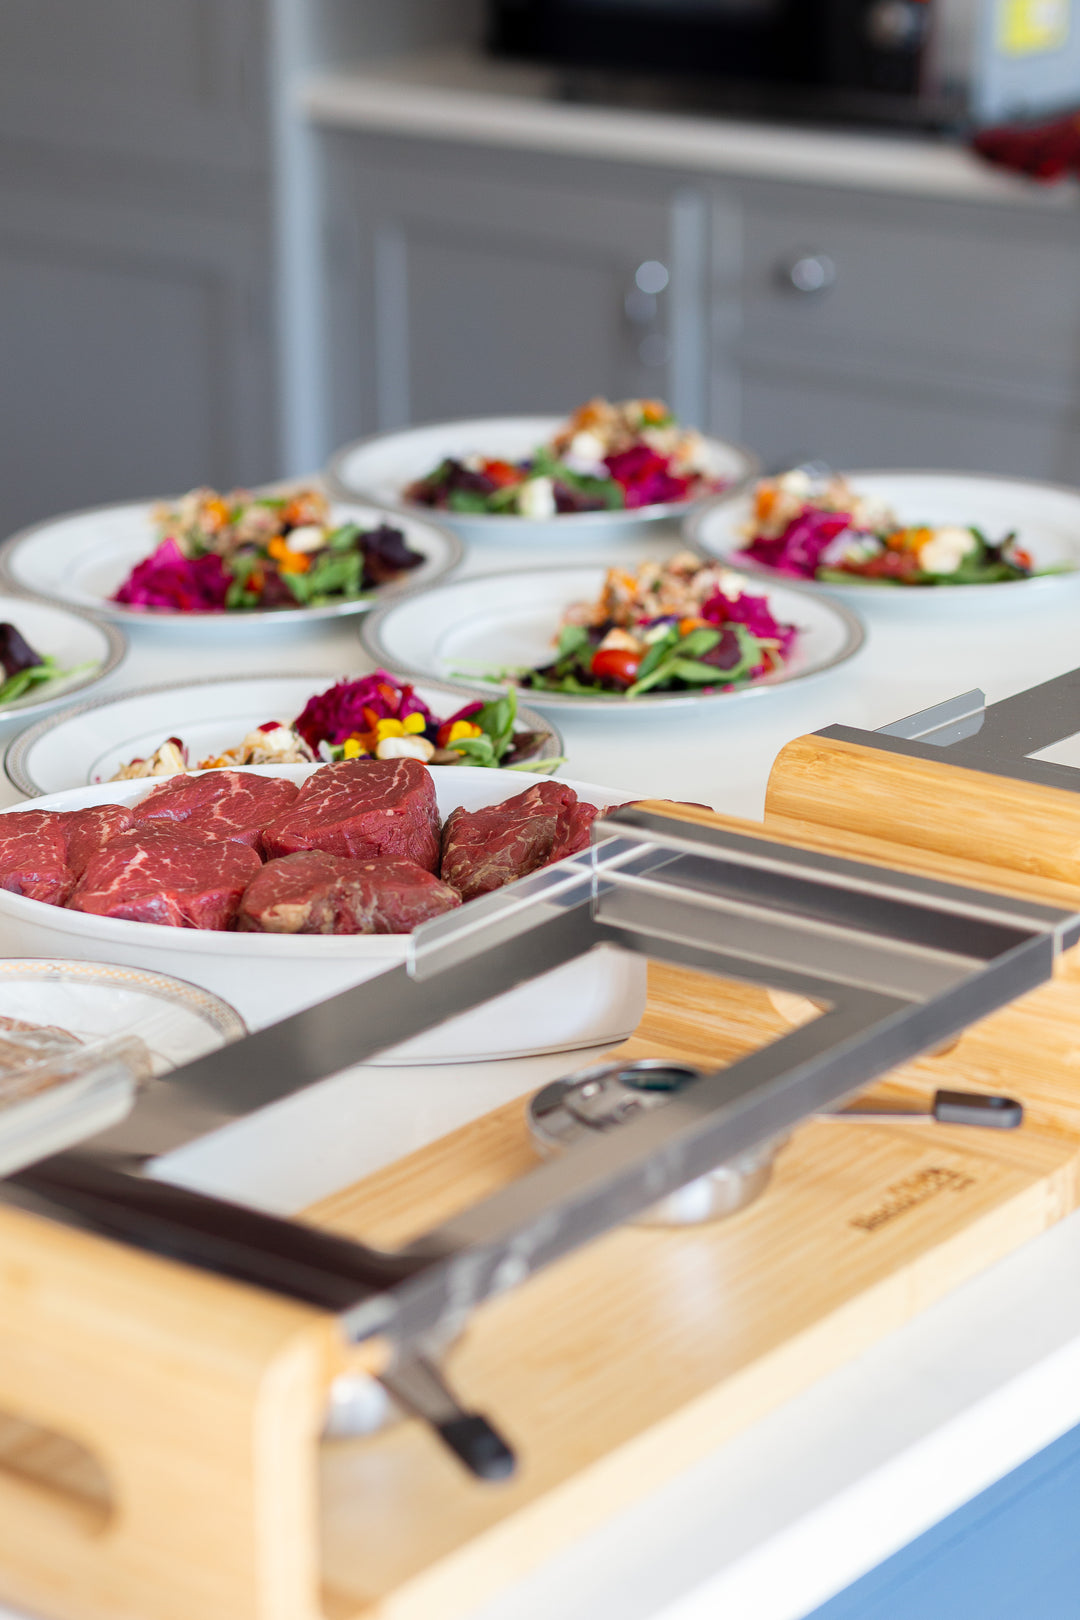 Steak Stone Sharing Platte und Grill-Set